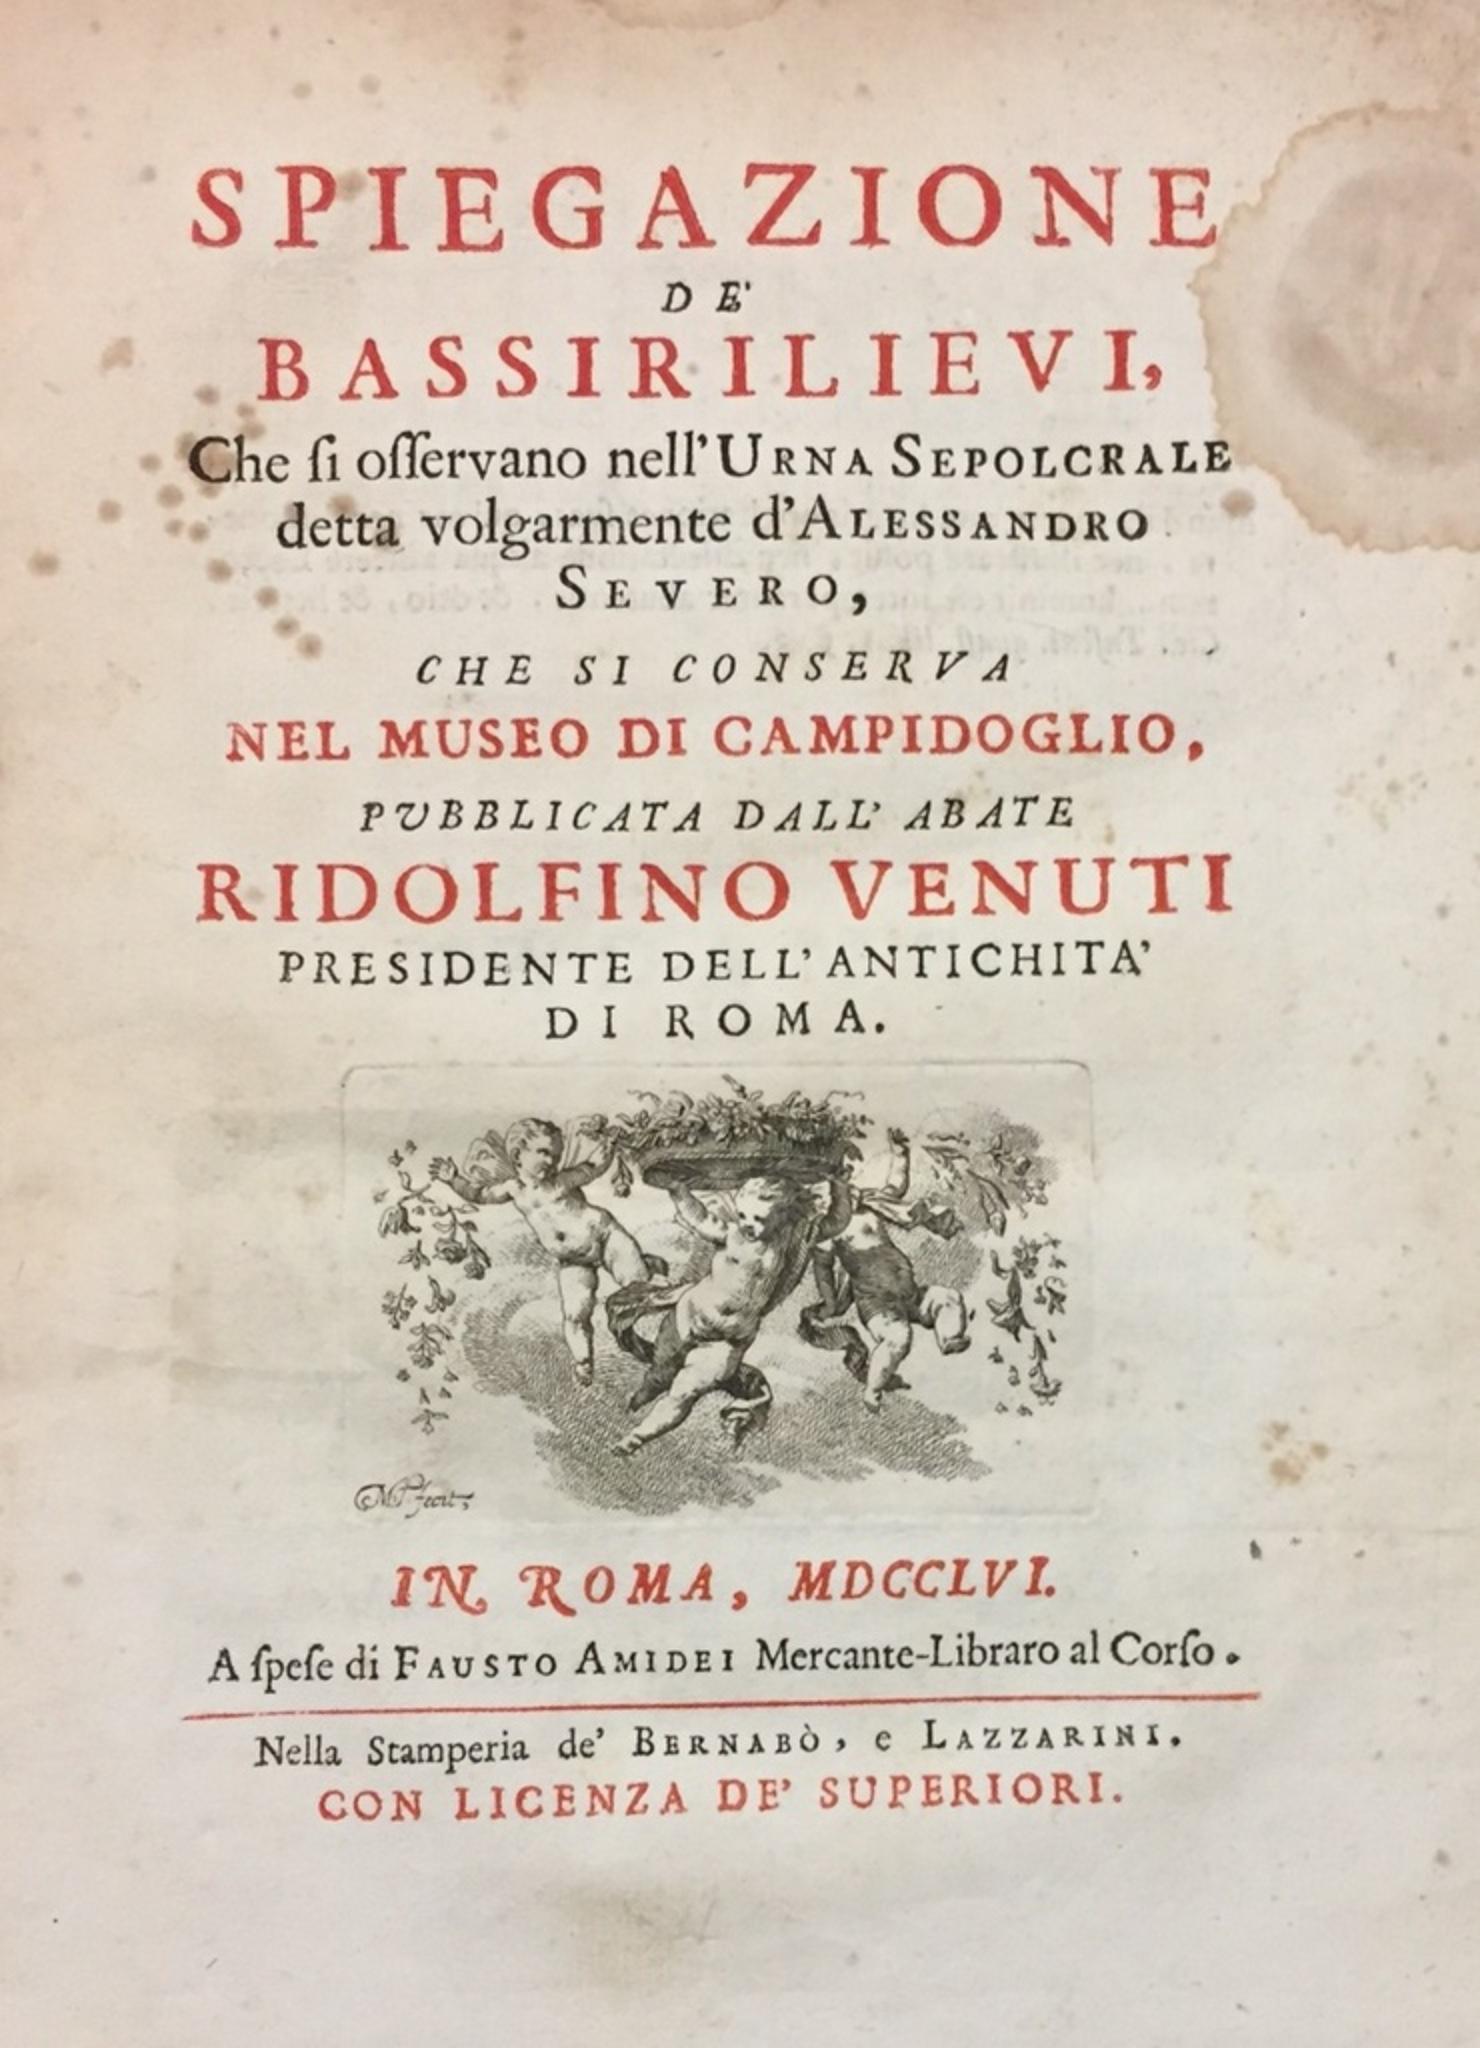 Spiegazione de' bassirilievi dell'urna detta d'Alessandro Severo - 1756 - Art by Ridolfino Venuti 